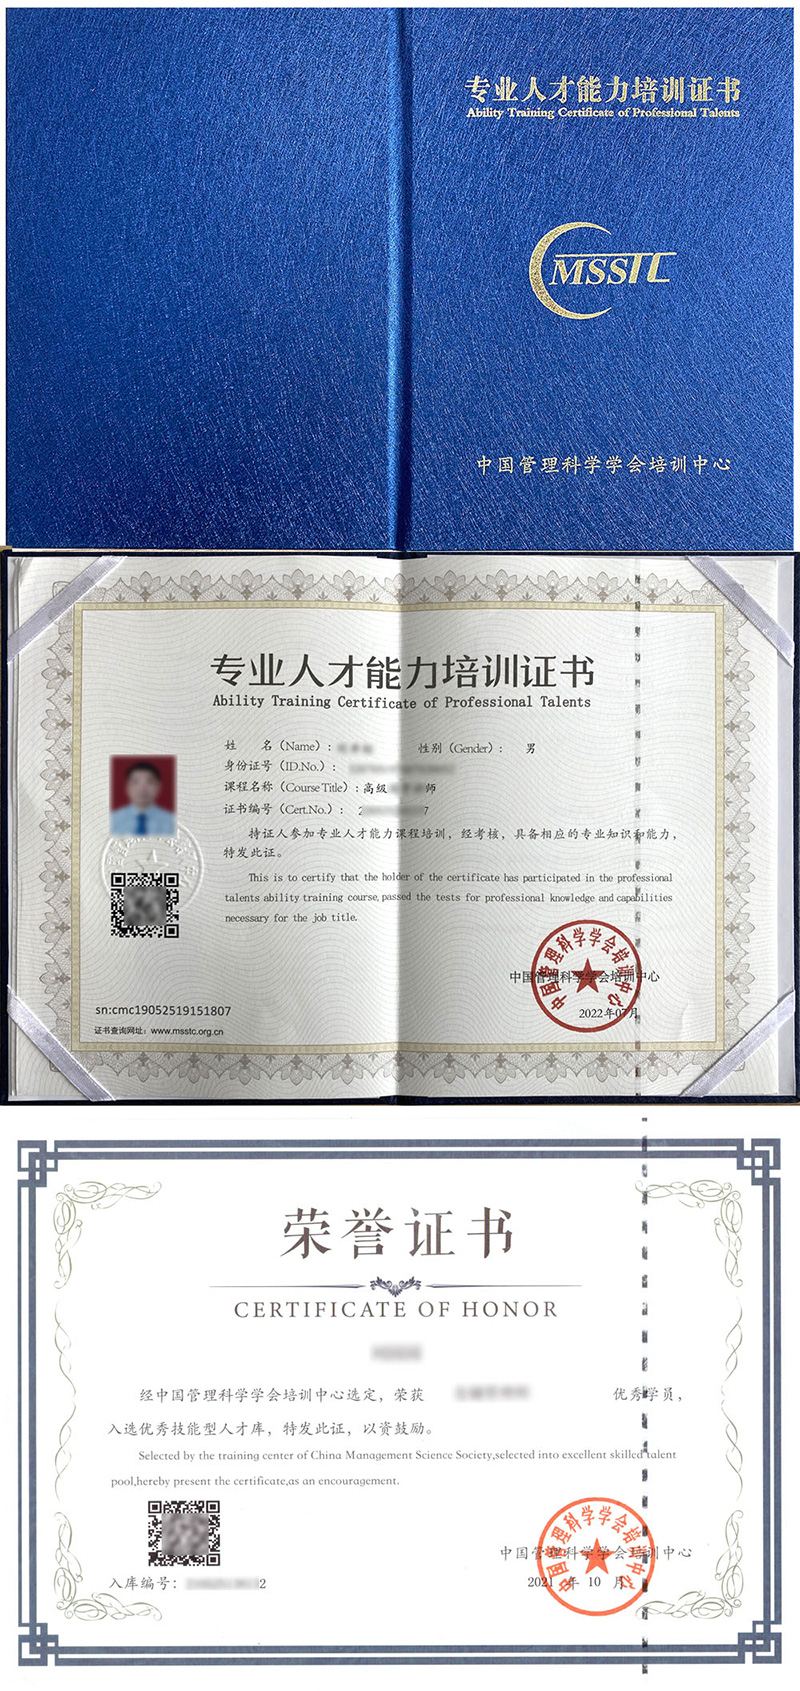 中国管理科学学会培训中心 专业人才能力培训证书 营养配餐师证证书样本